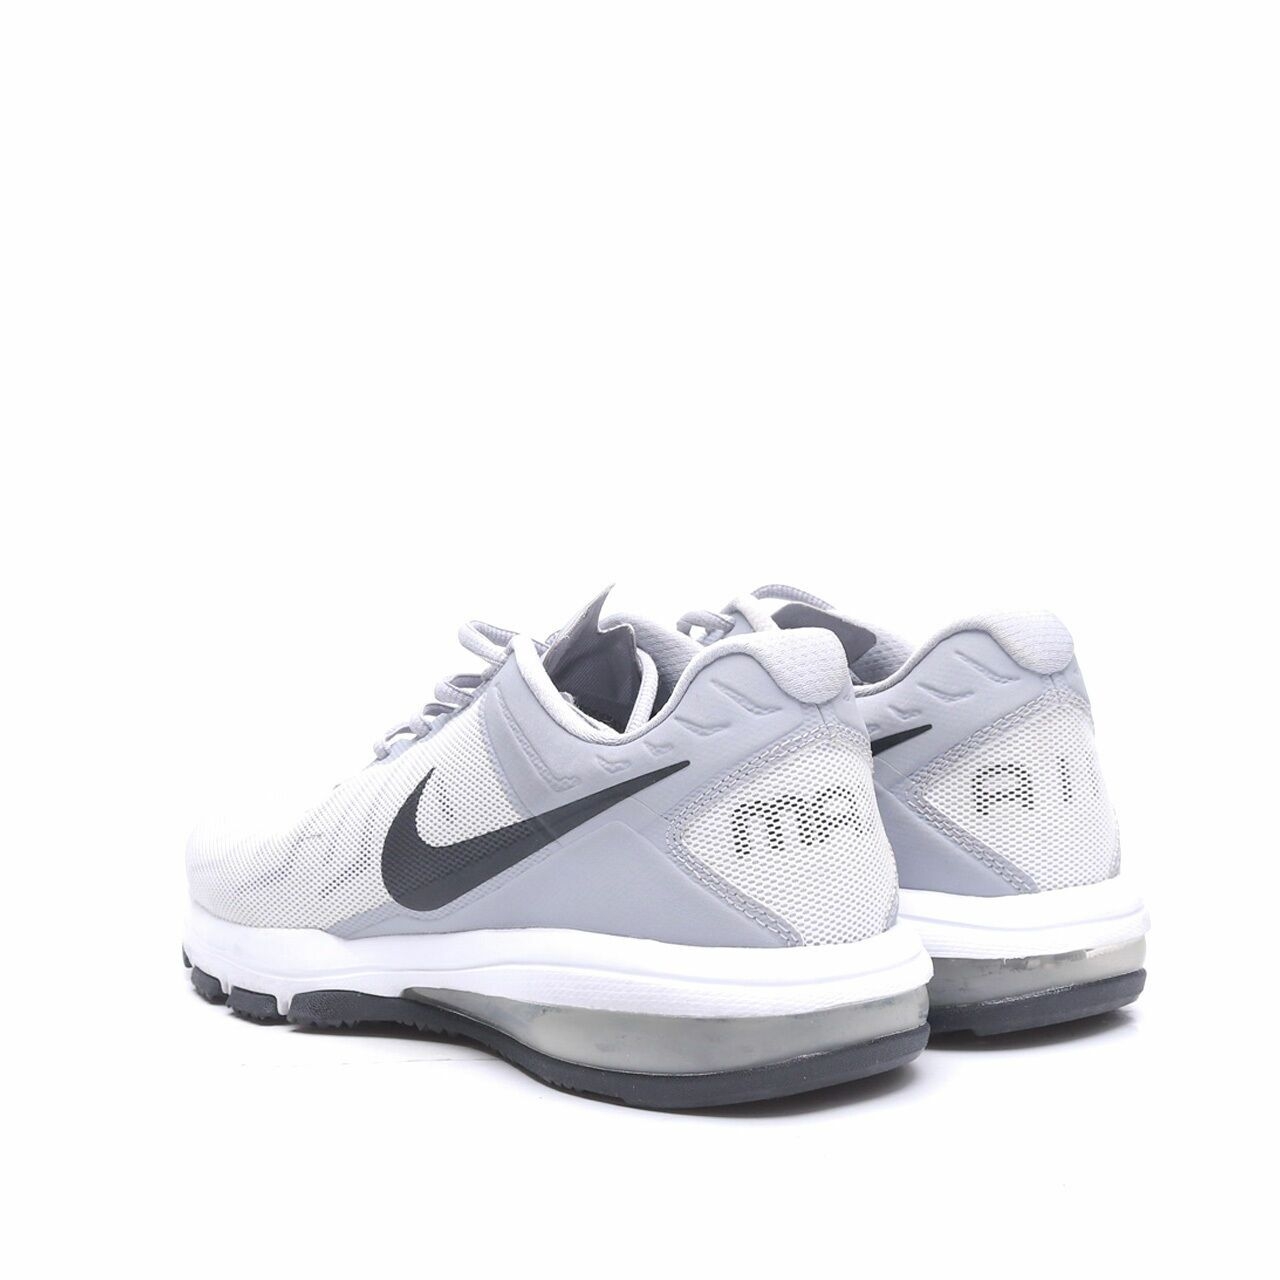 Nike Men's Air Max Full Ride Tr Grey Sneakers